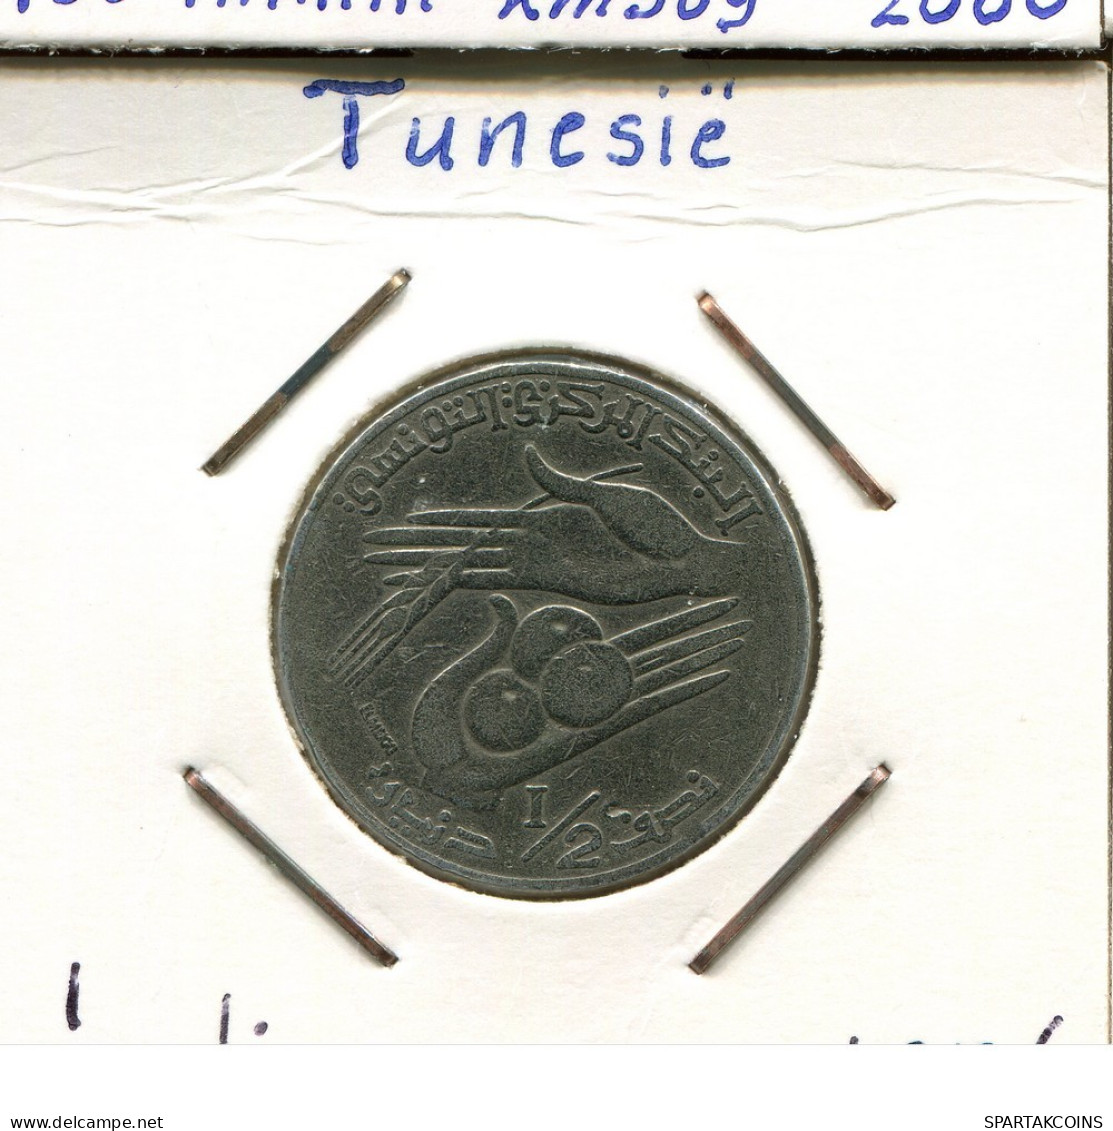 1/2 DINAR 1976 TÚNEZ TUNISIA Moneda #AP835.2.E.A - Tunesien